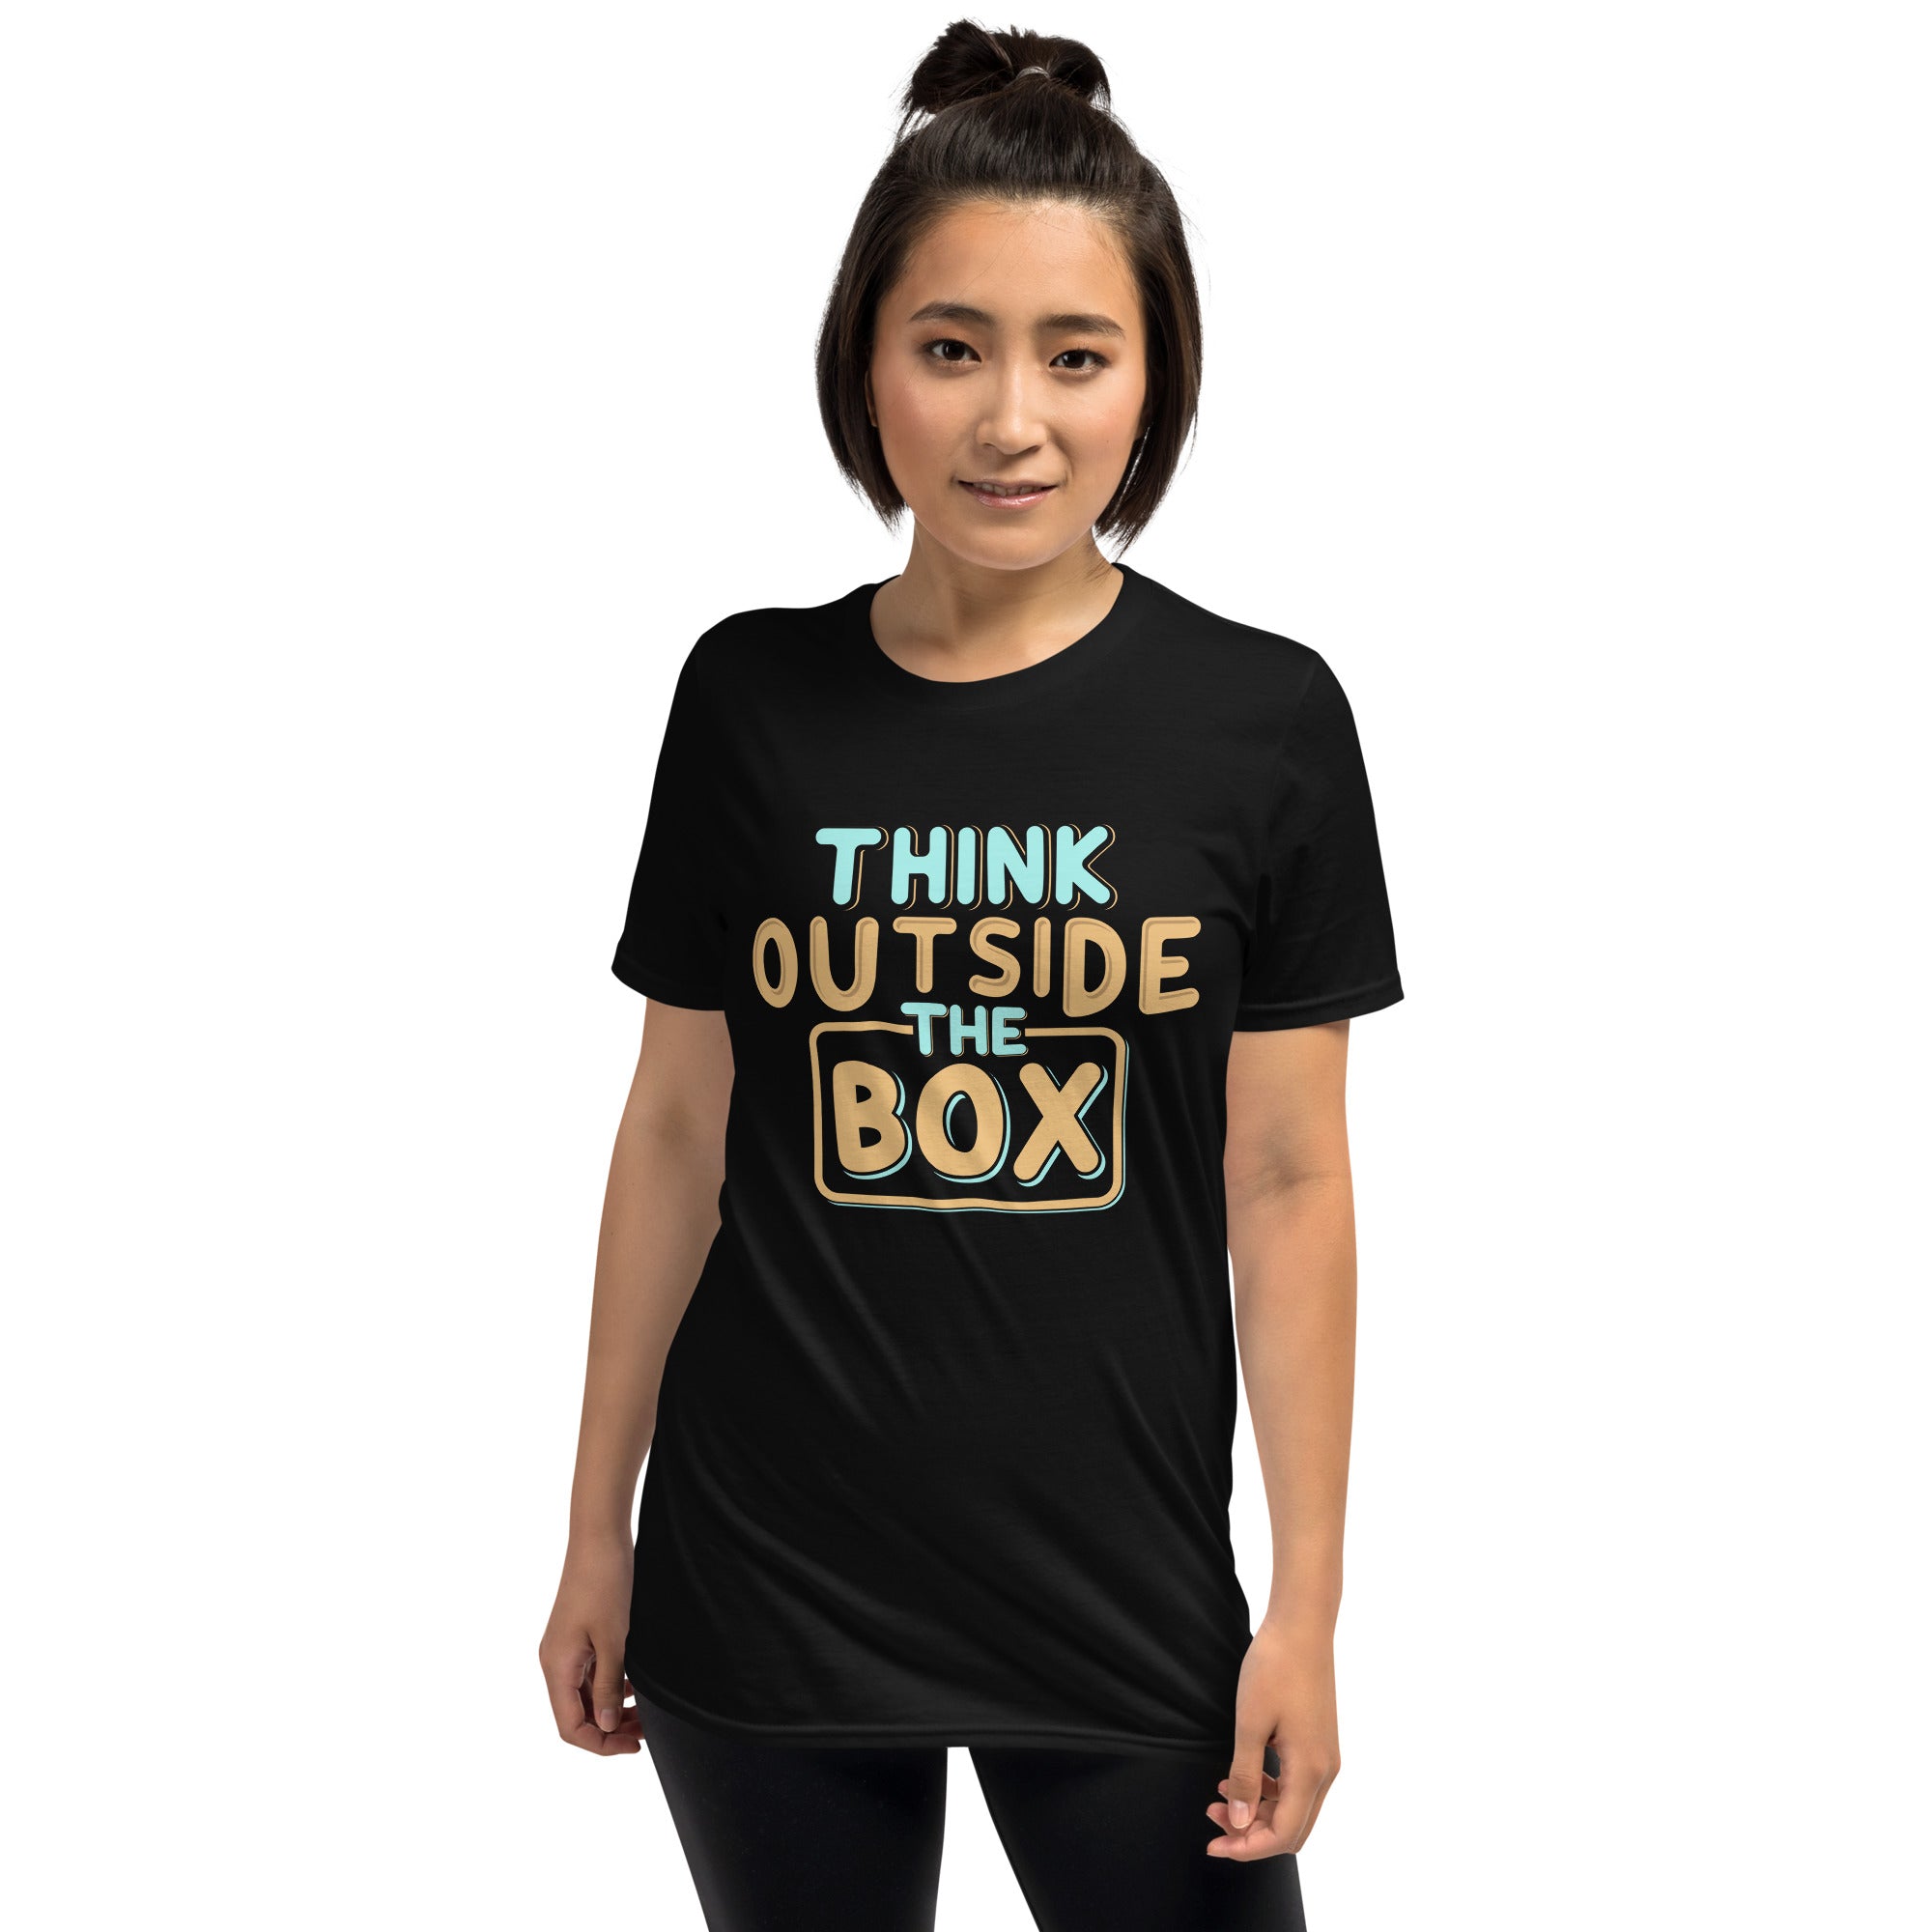 Think Outside the Box - Short-Sleeve Unisex T-Shirt